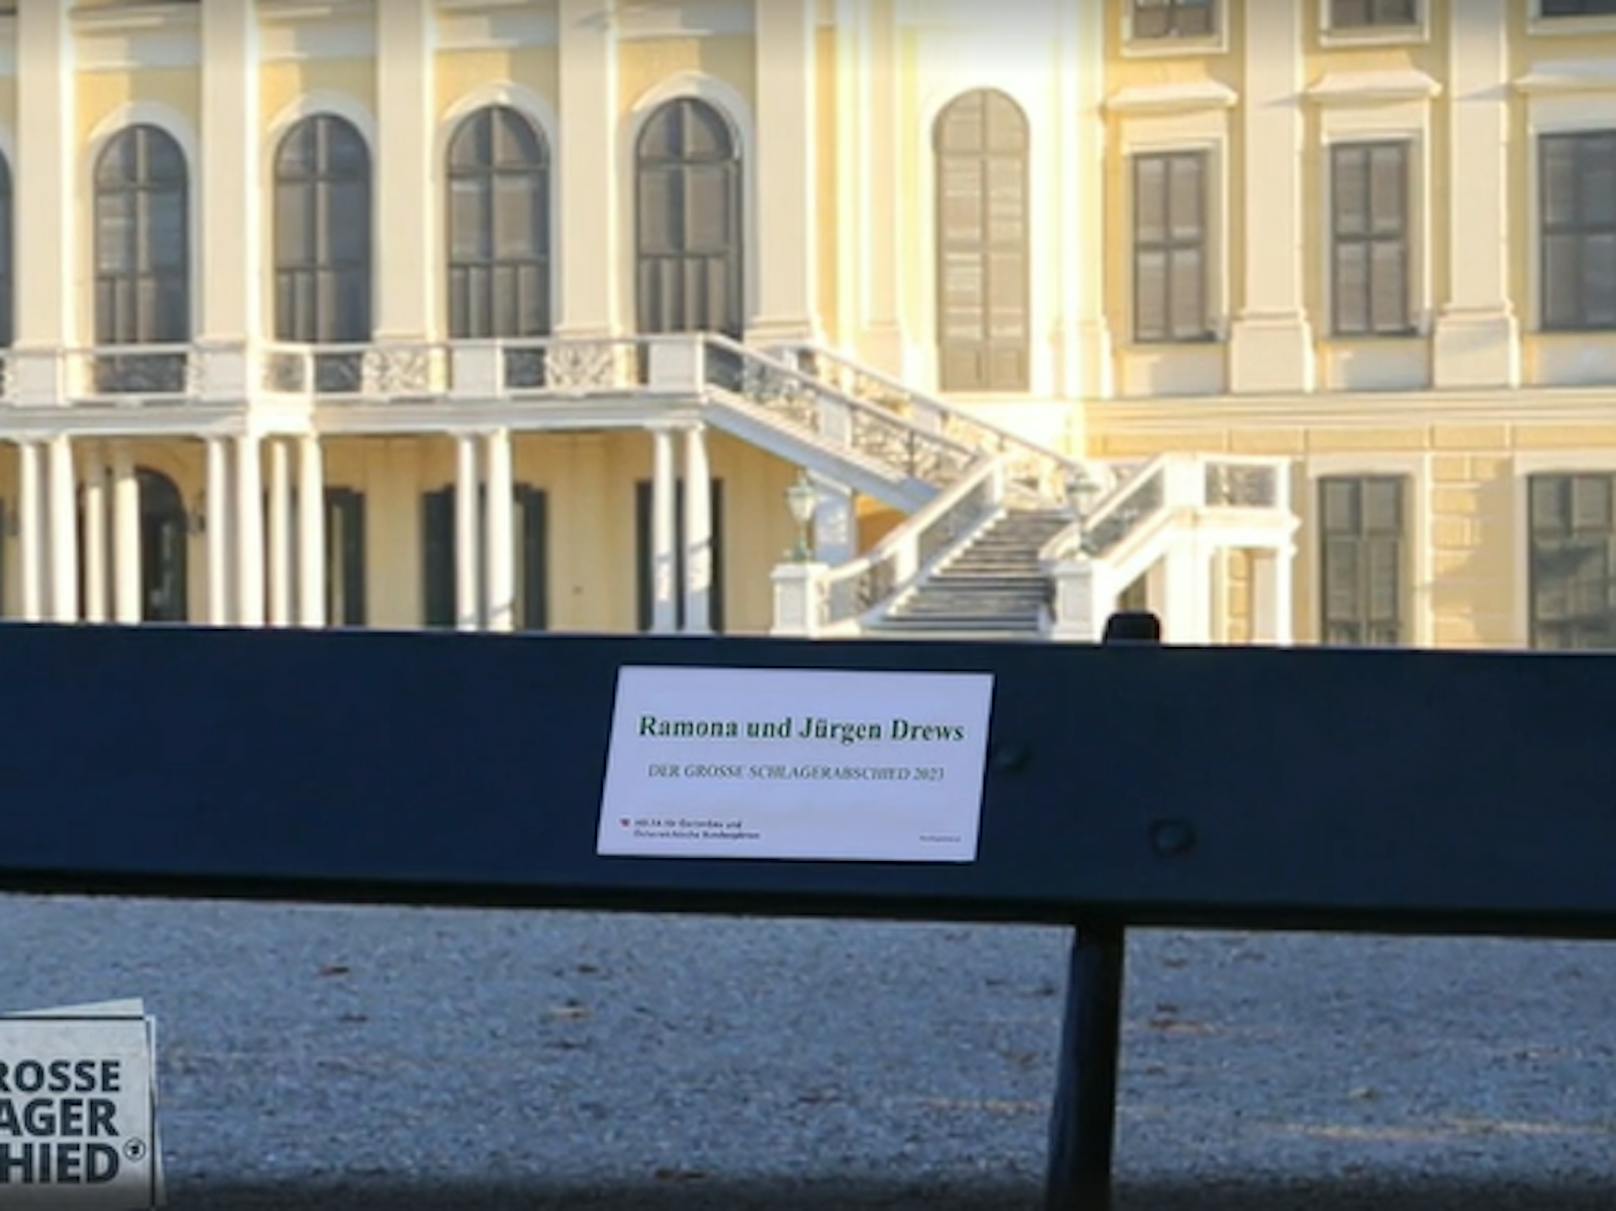 "Wenn ihr das nächste mal in Wien seid, könnt ihr eine Auszeit nehmen und macht es euch auf eurer Parkbank in Schloss Schönbrunn gemütlich", fügt Moderator <strong>Florian Silbereisen</strong> hinzu.